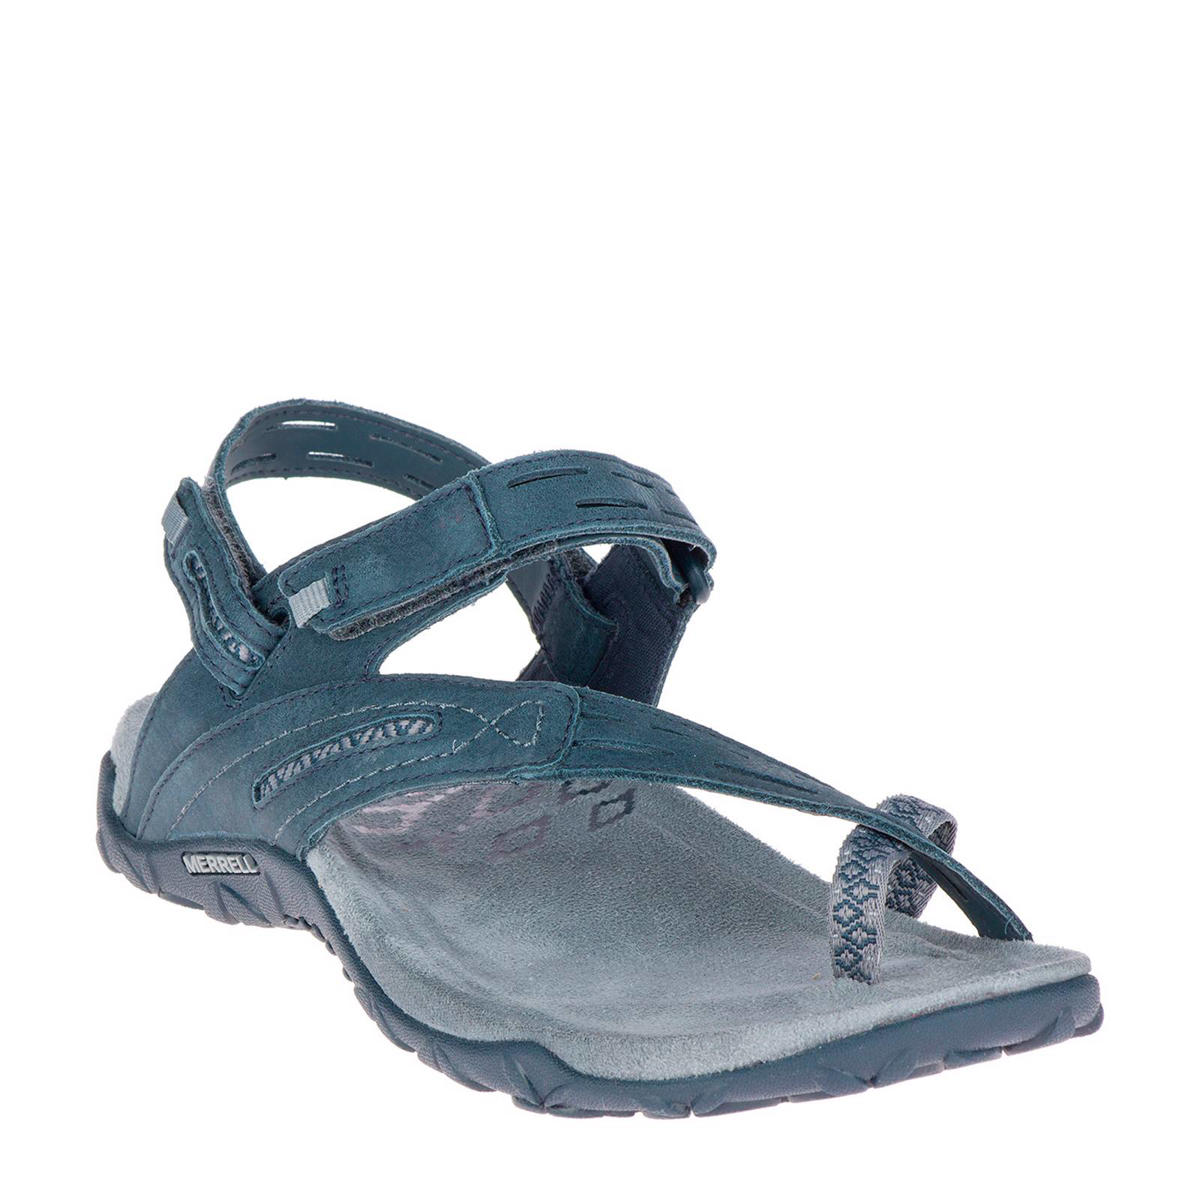 Merrell sandalen Terran II blauw | wehkamp